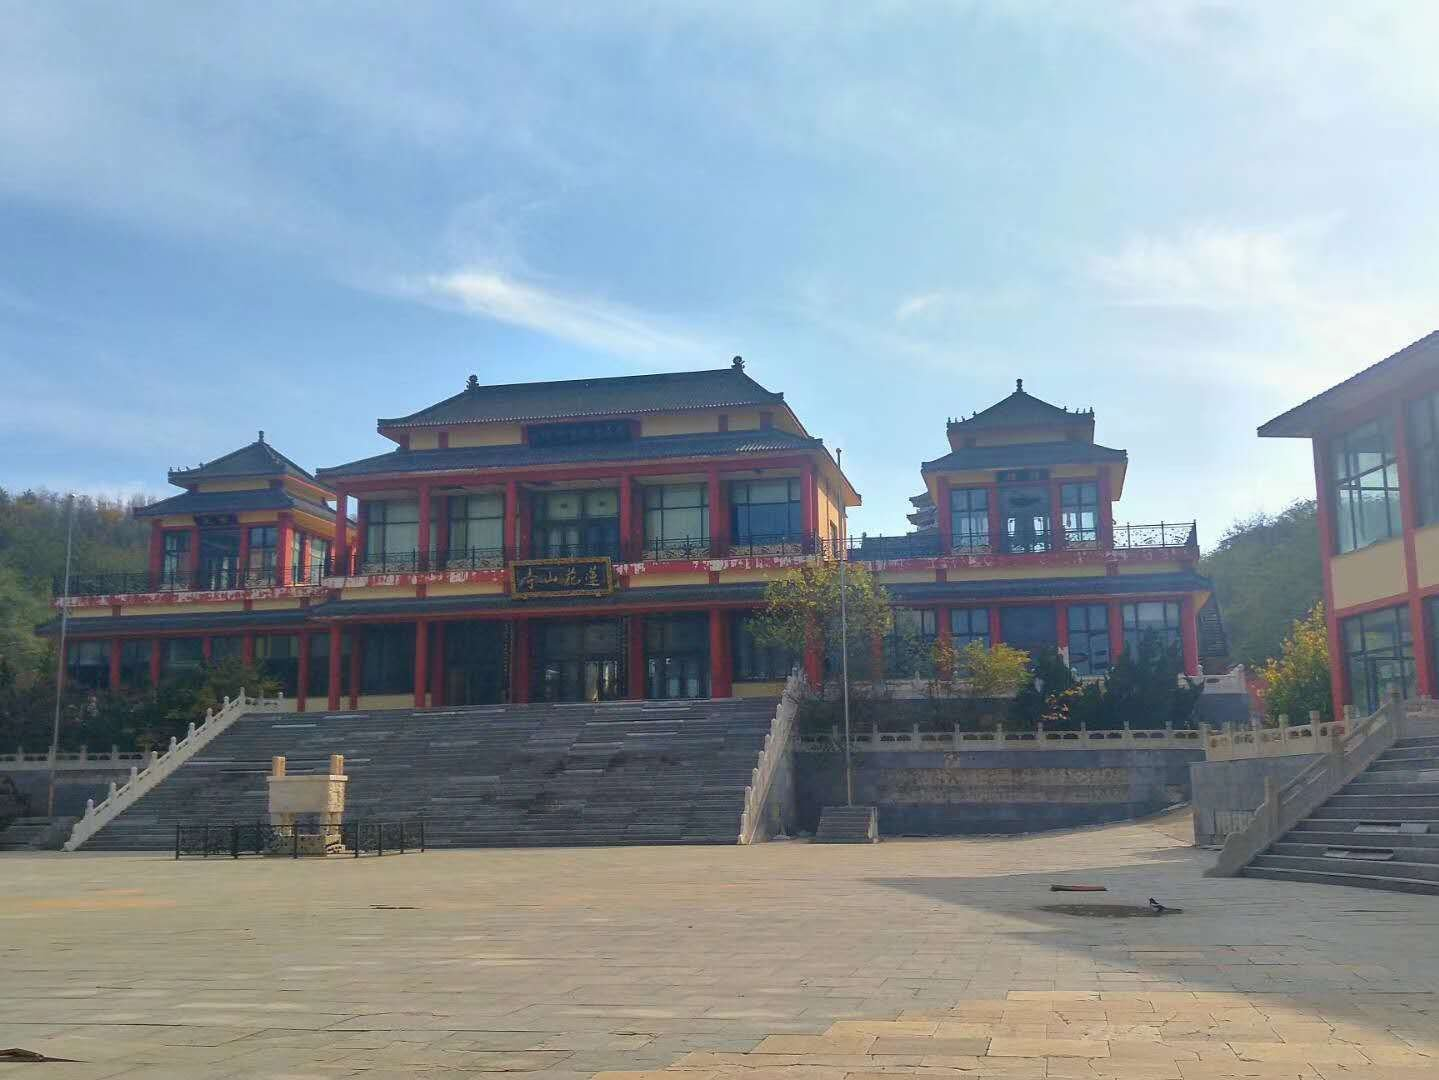 莲花山寺:大连市内最大的佛教寺院,坐落在独特的莲花状构造上